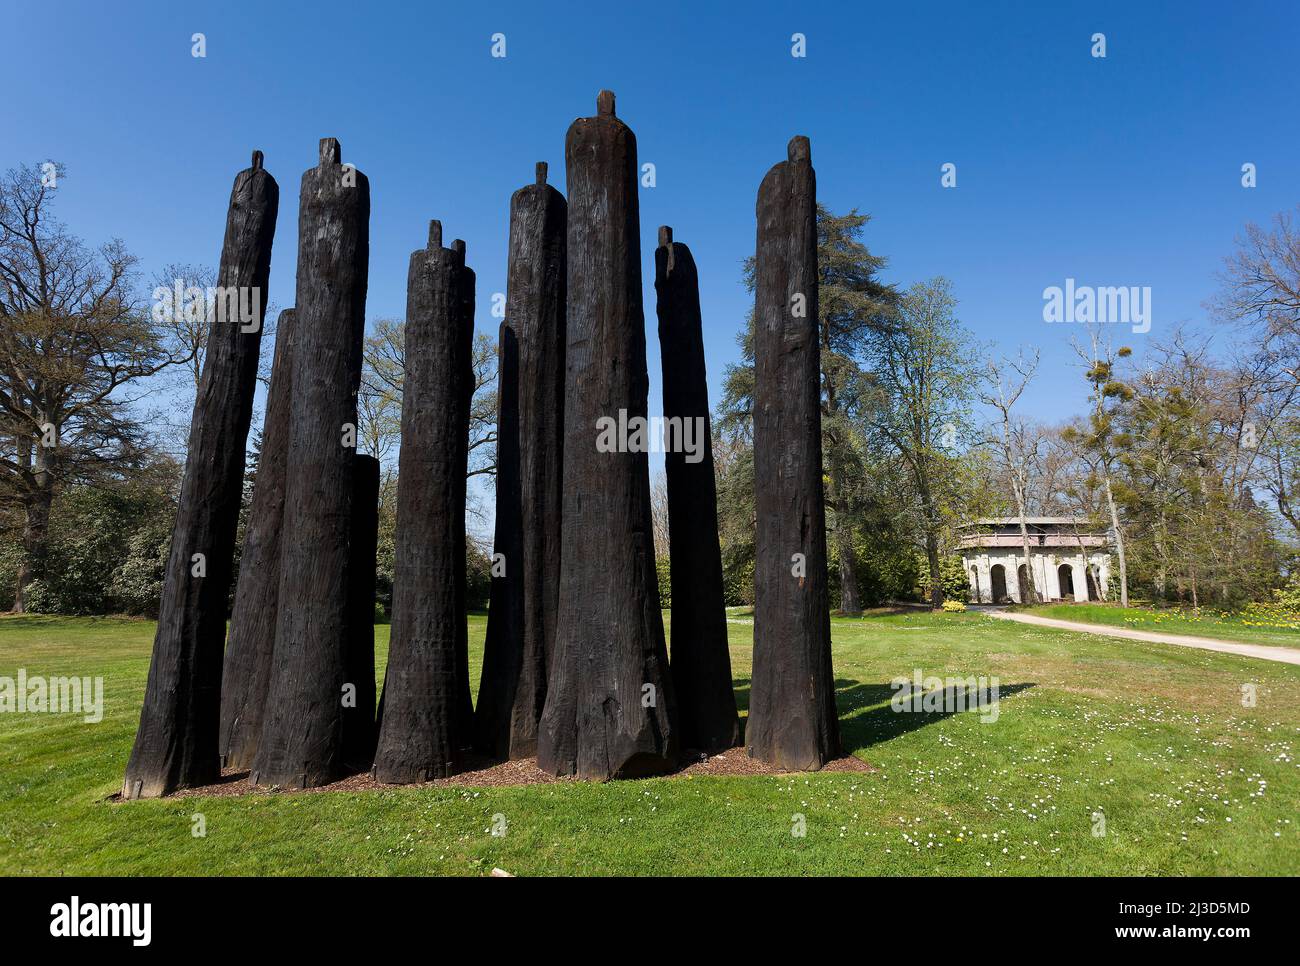 Incisions sculpture by Christian Lapie, Chaumont castle, Chaumont-sur-Loire, Loir-et-Cher, Centre-Val de Loire, France Stock Photo